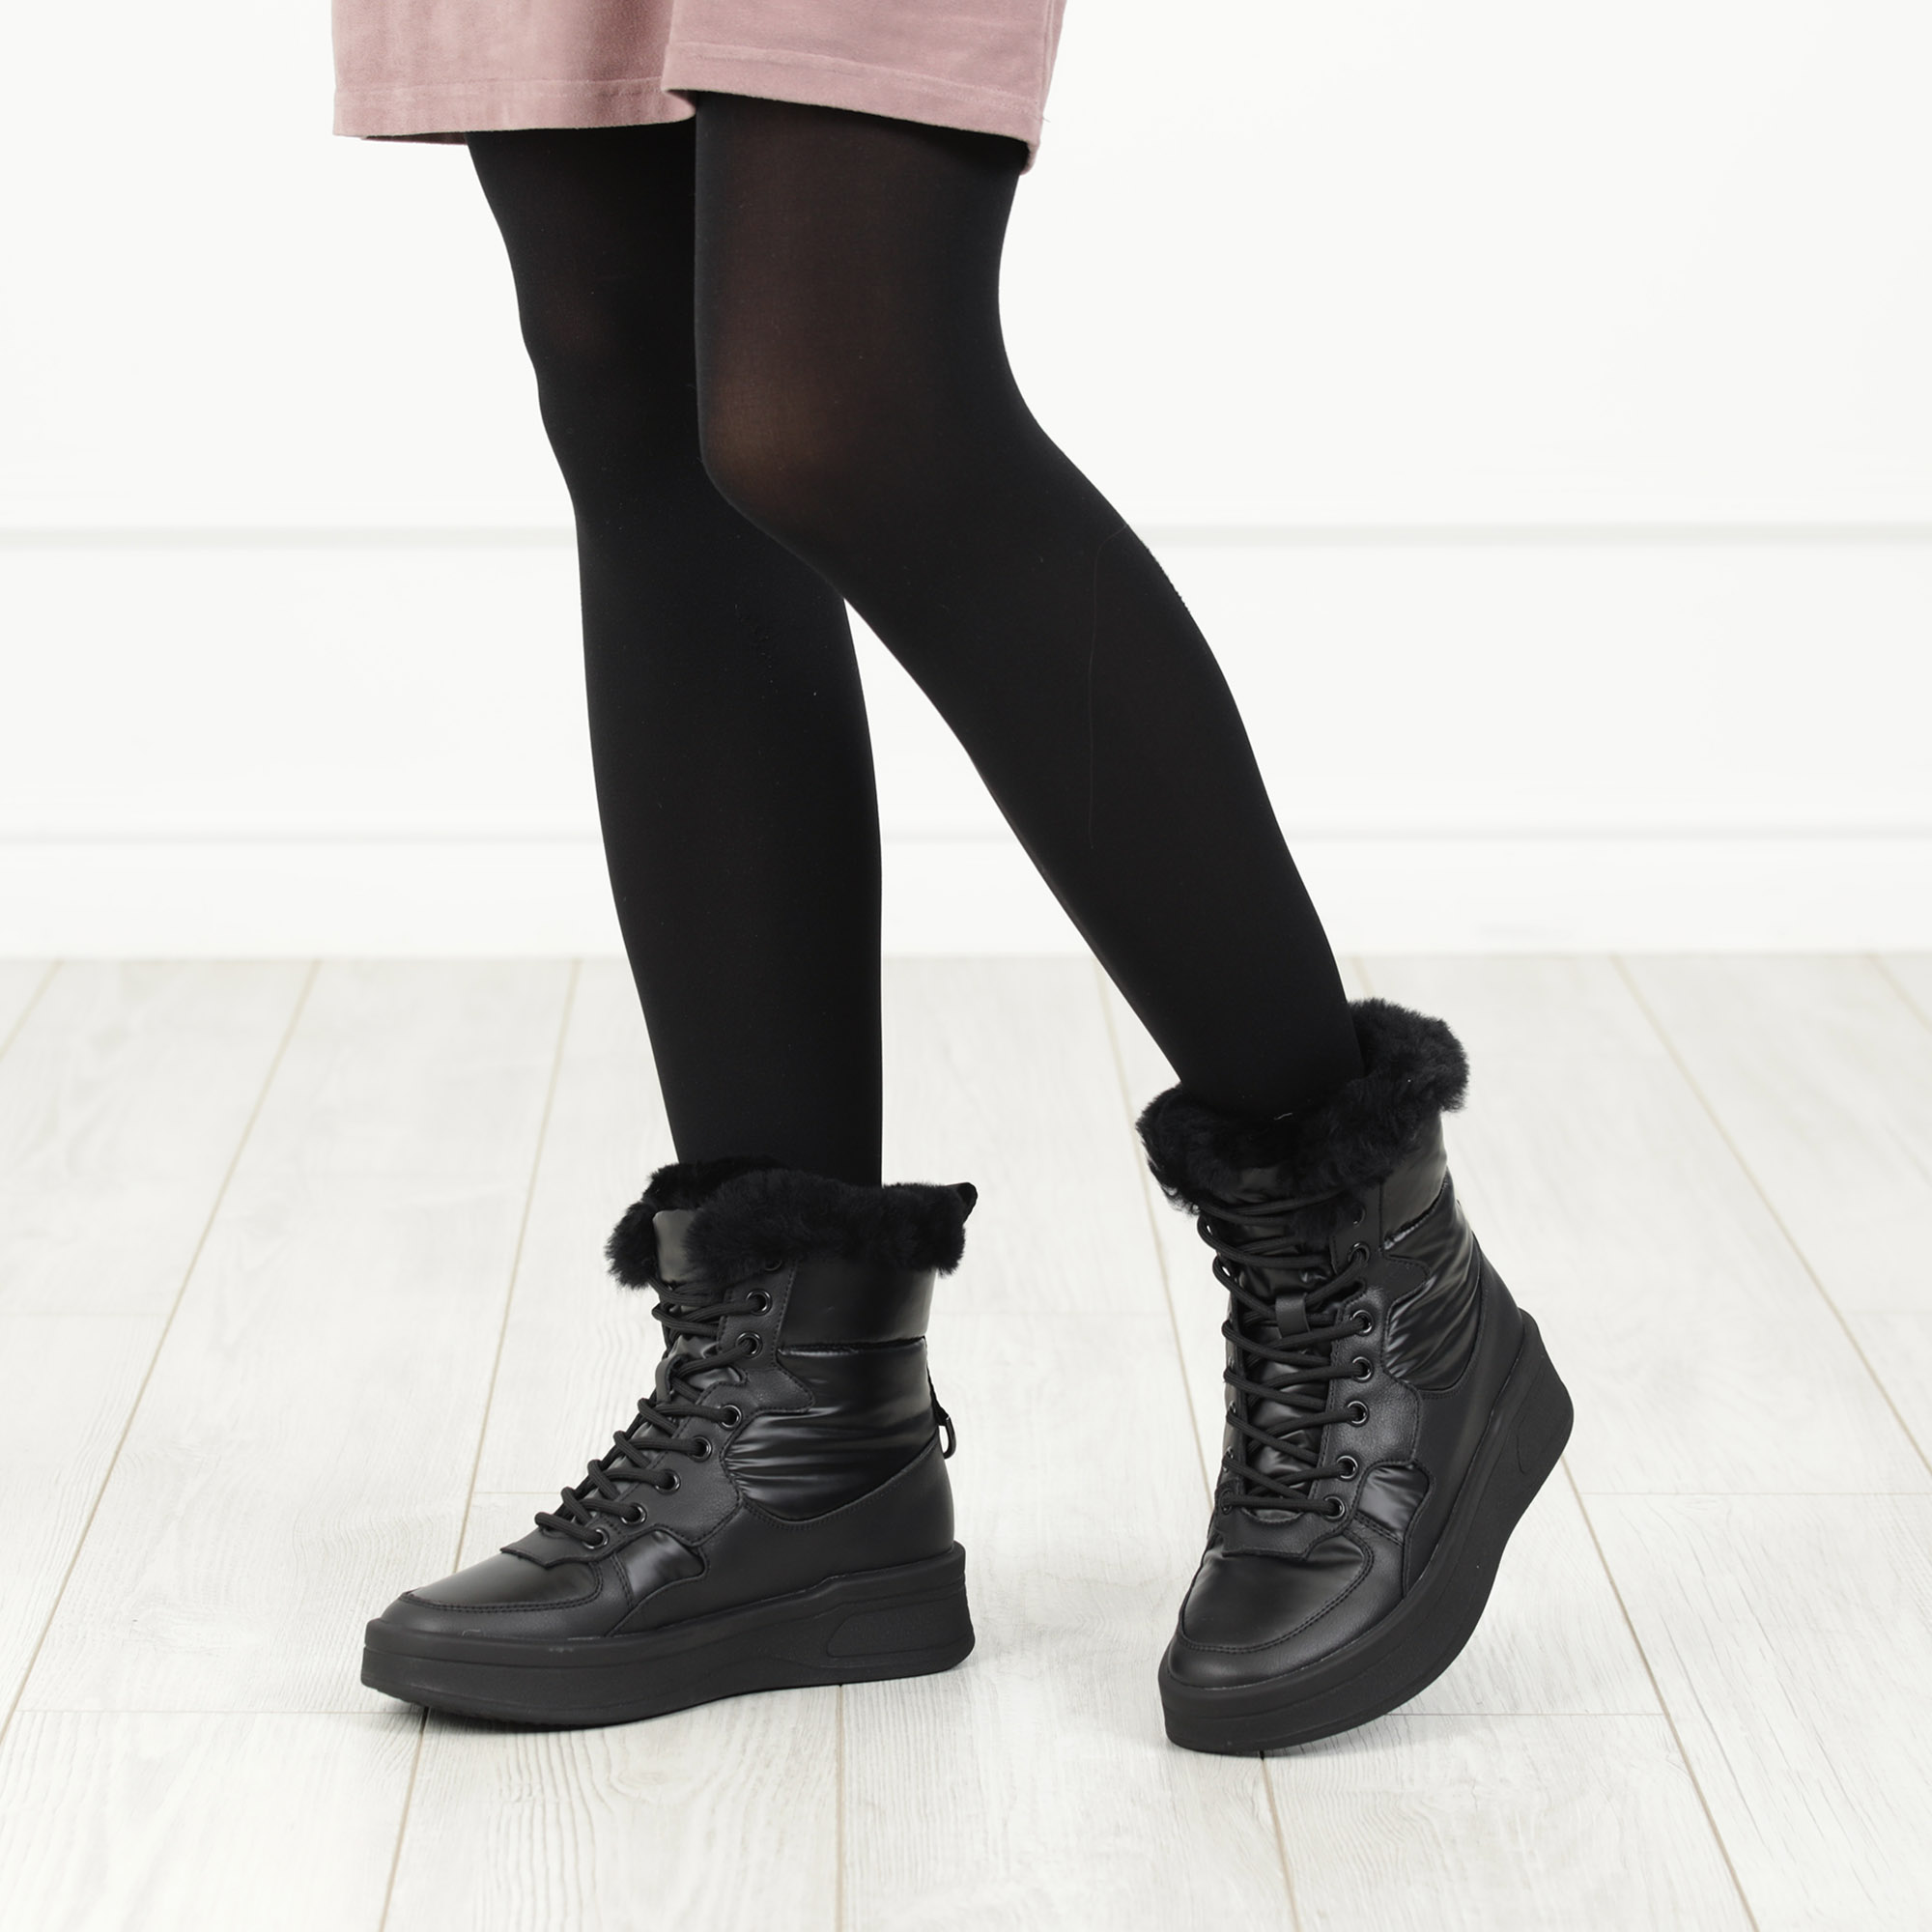 Черные высокие кроссовки из комбинированных материалов смеховой опушкой на подкладке из натуральной шерсти на утолщенной платформе Respect, цвет черный - фото 2